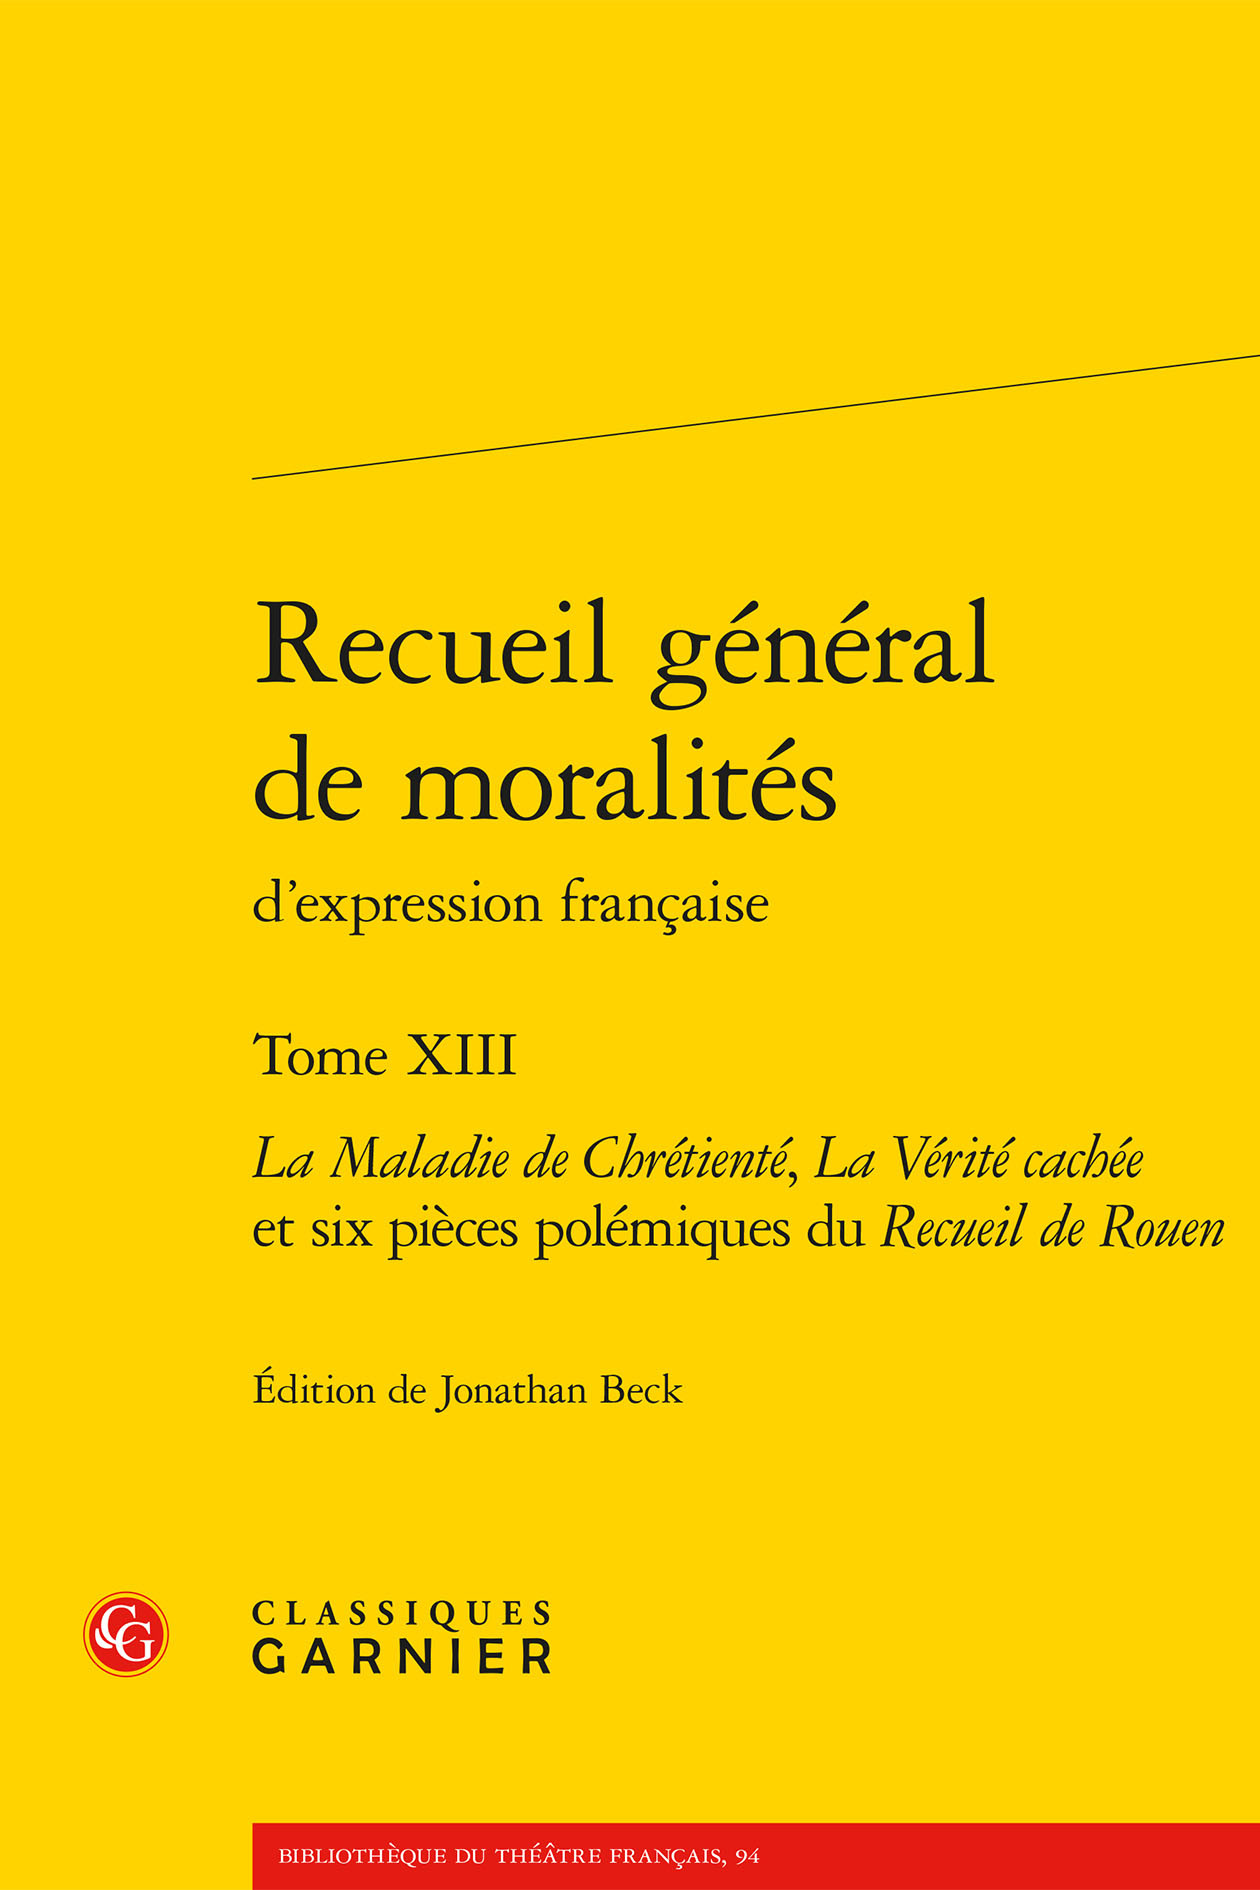 Recueil général de moralités, La Maladie de Chrétienté, La Vérité cachée et six pièces polémiques du Recueil de Rouen (9782406131984-front-cover)